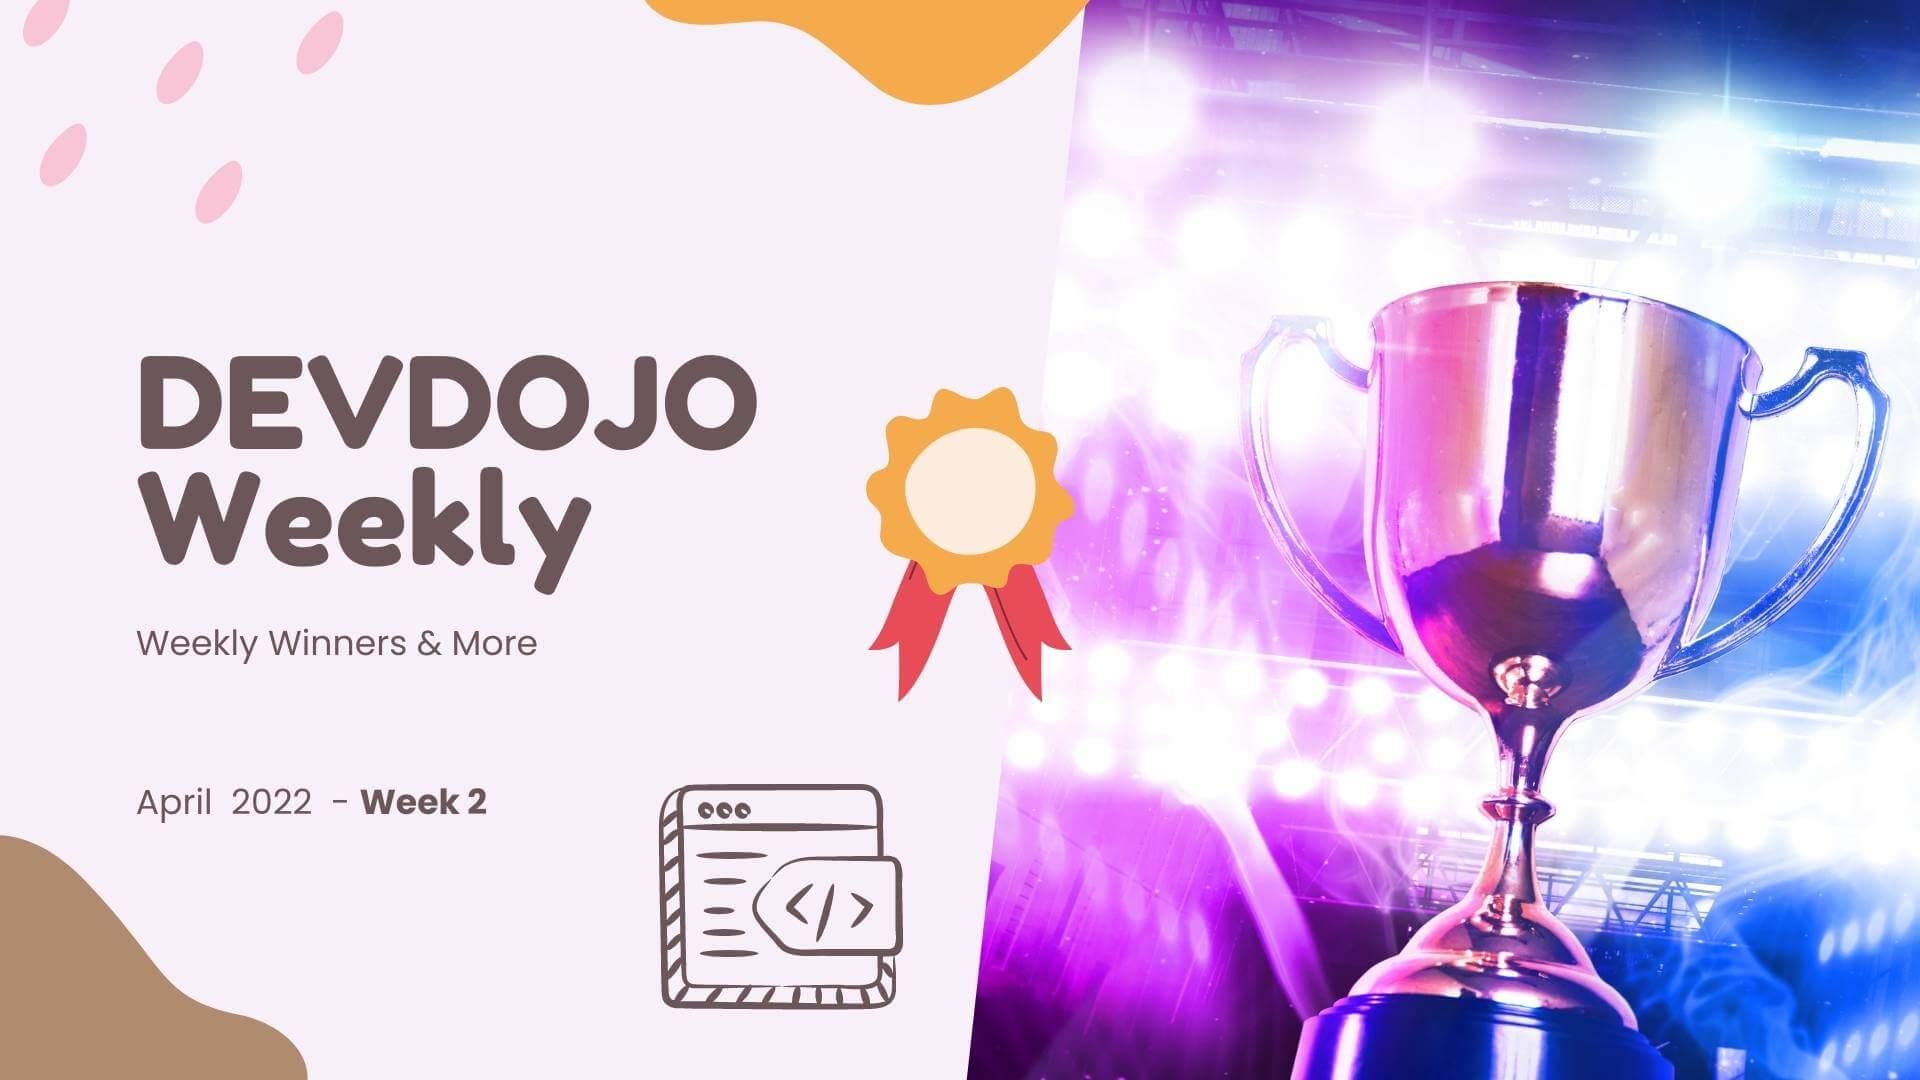 DevDojo Weekly - April 2022 - Week 2